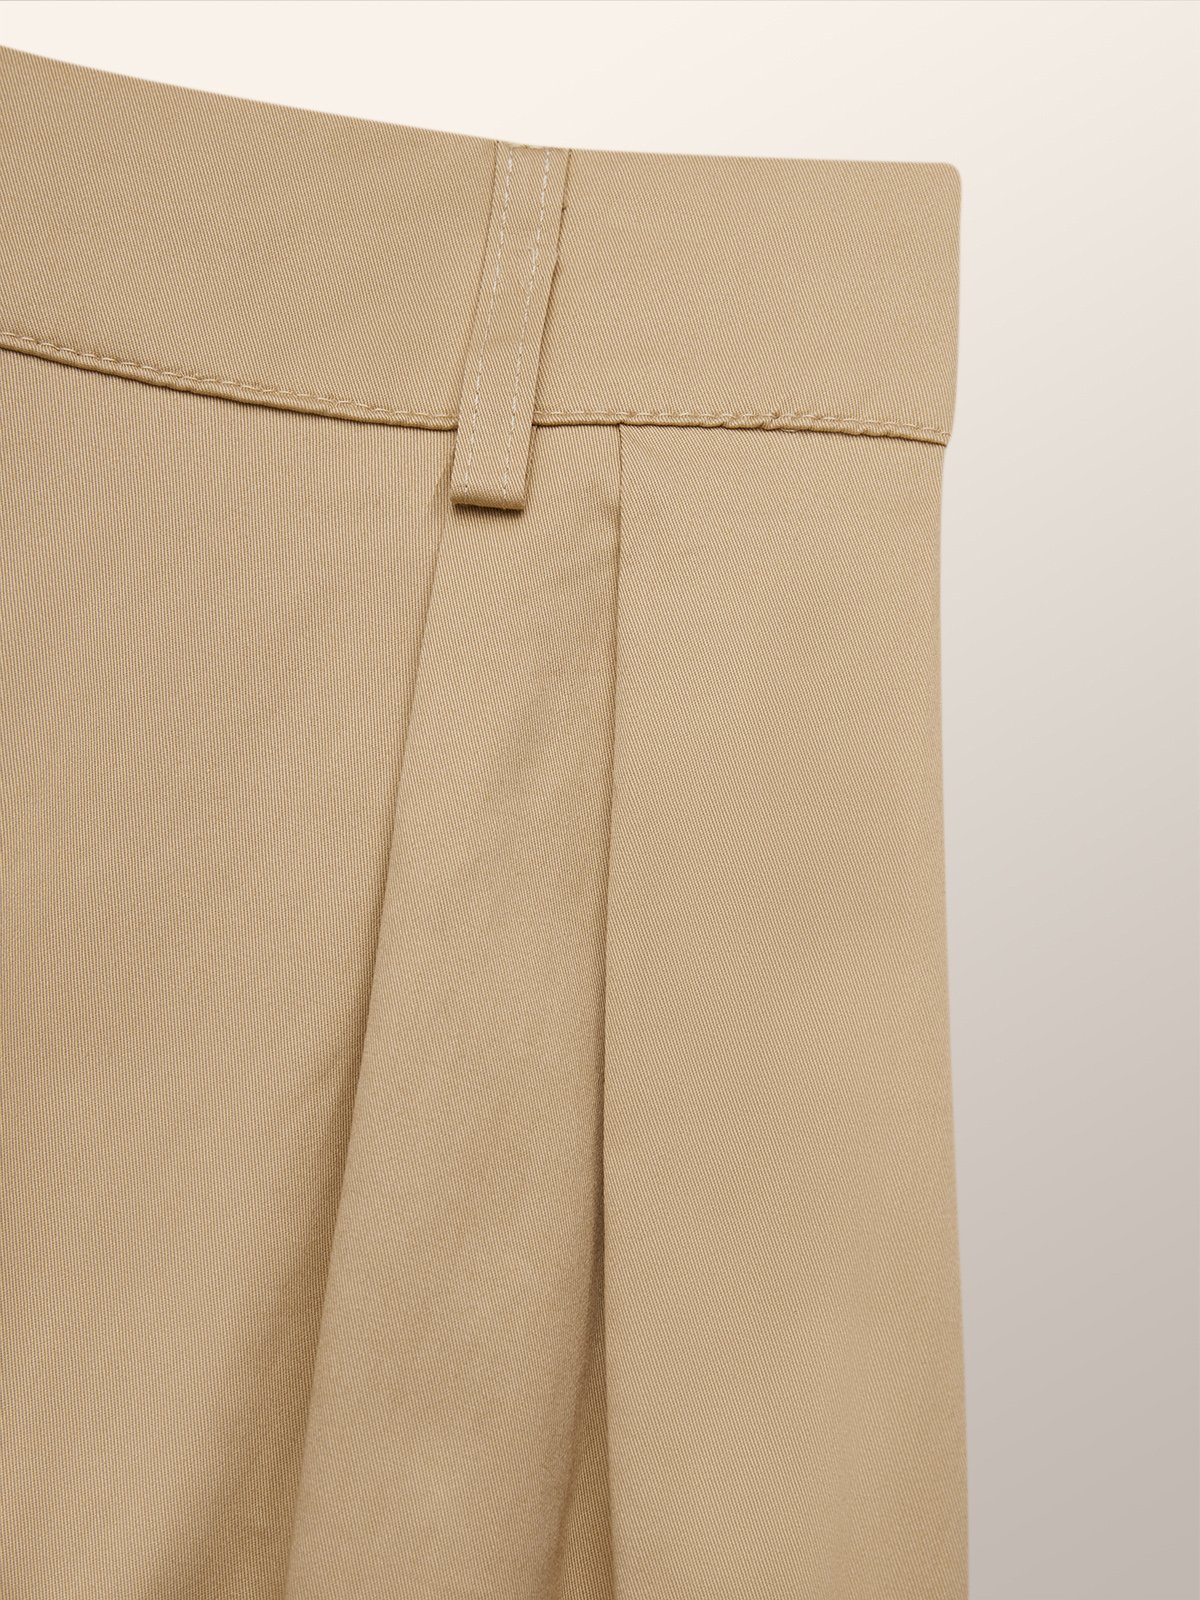 Loose Lightweight Urban Fashion Long Pants Cargo pants | stylewe